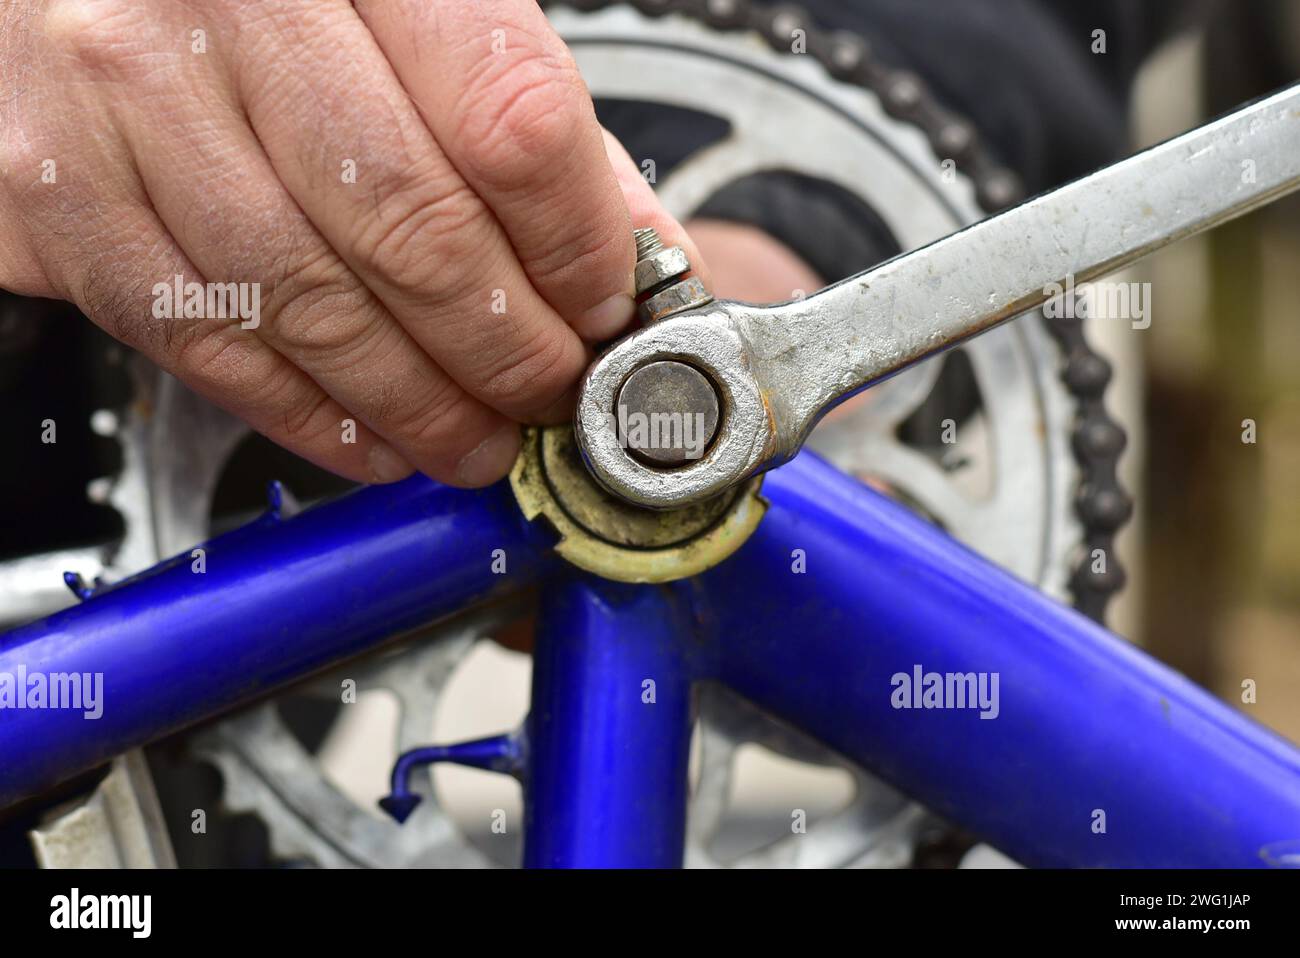 Primo piano della mano di un uomo impegnato a riparare una bicicletta. Stringe il bullone del freno della bicicletta con una chiave a bussola. Foto Stock